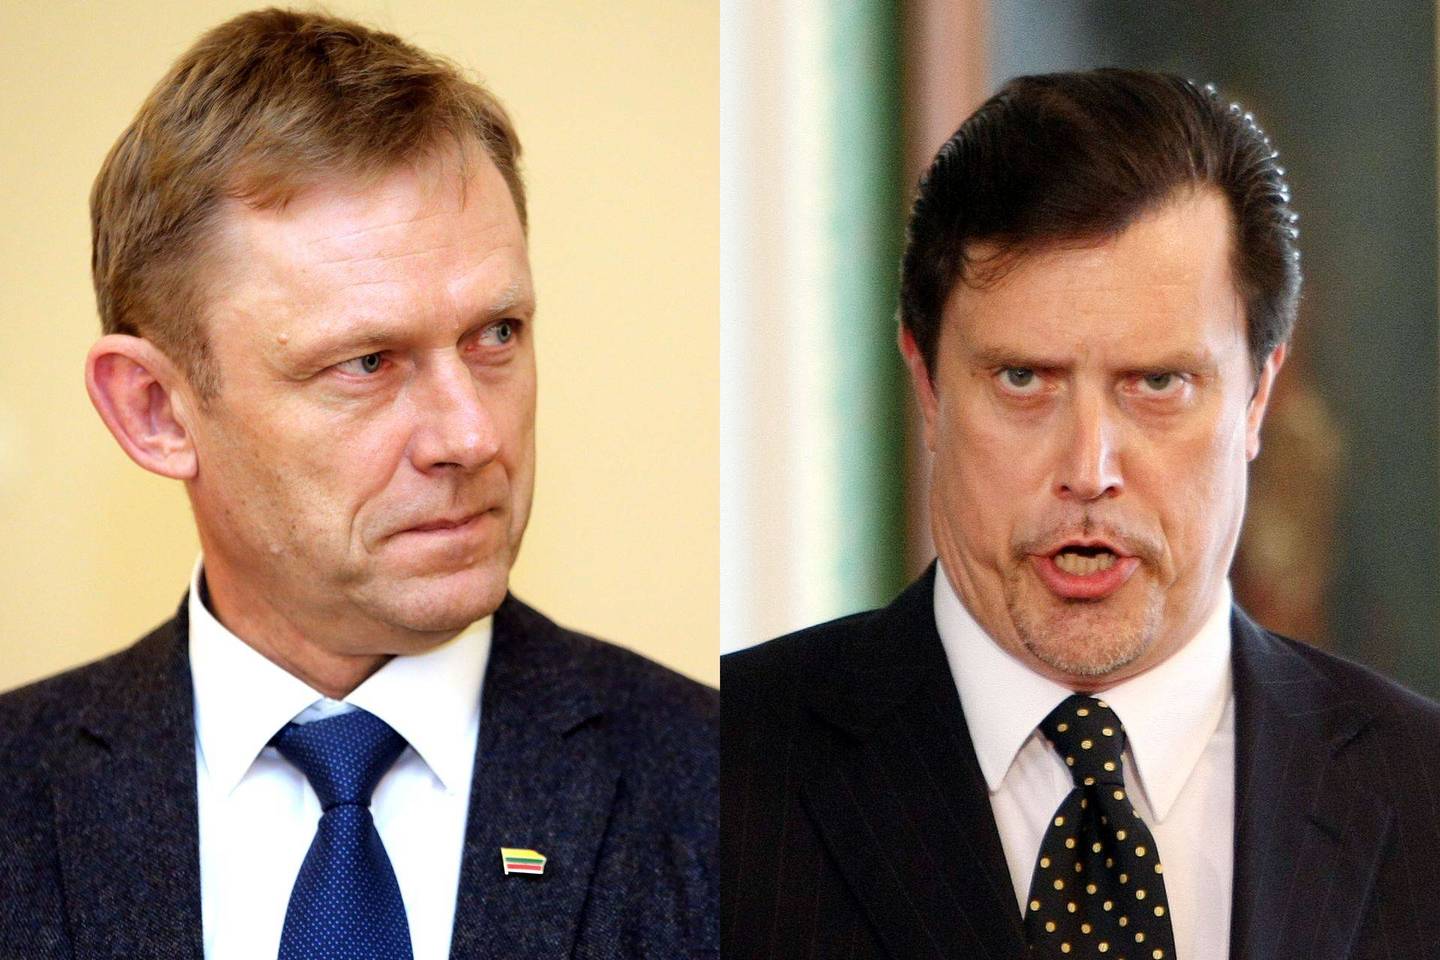 Kultūros ministras Š.Birutis linkęs Seimo nario V.Juozapaičio kaltinimus vadinti provokacija.<br>V.Balkūno ir R.Danisevičaus nuotr.